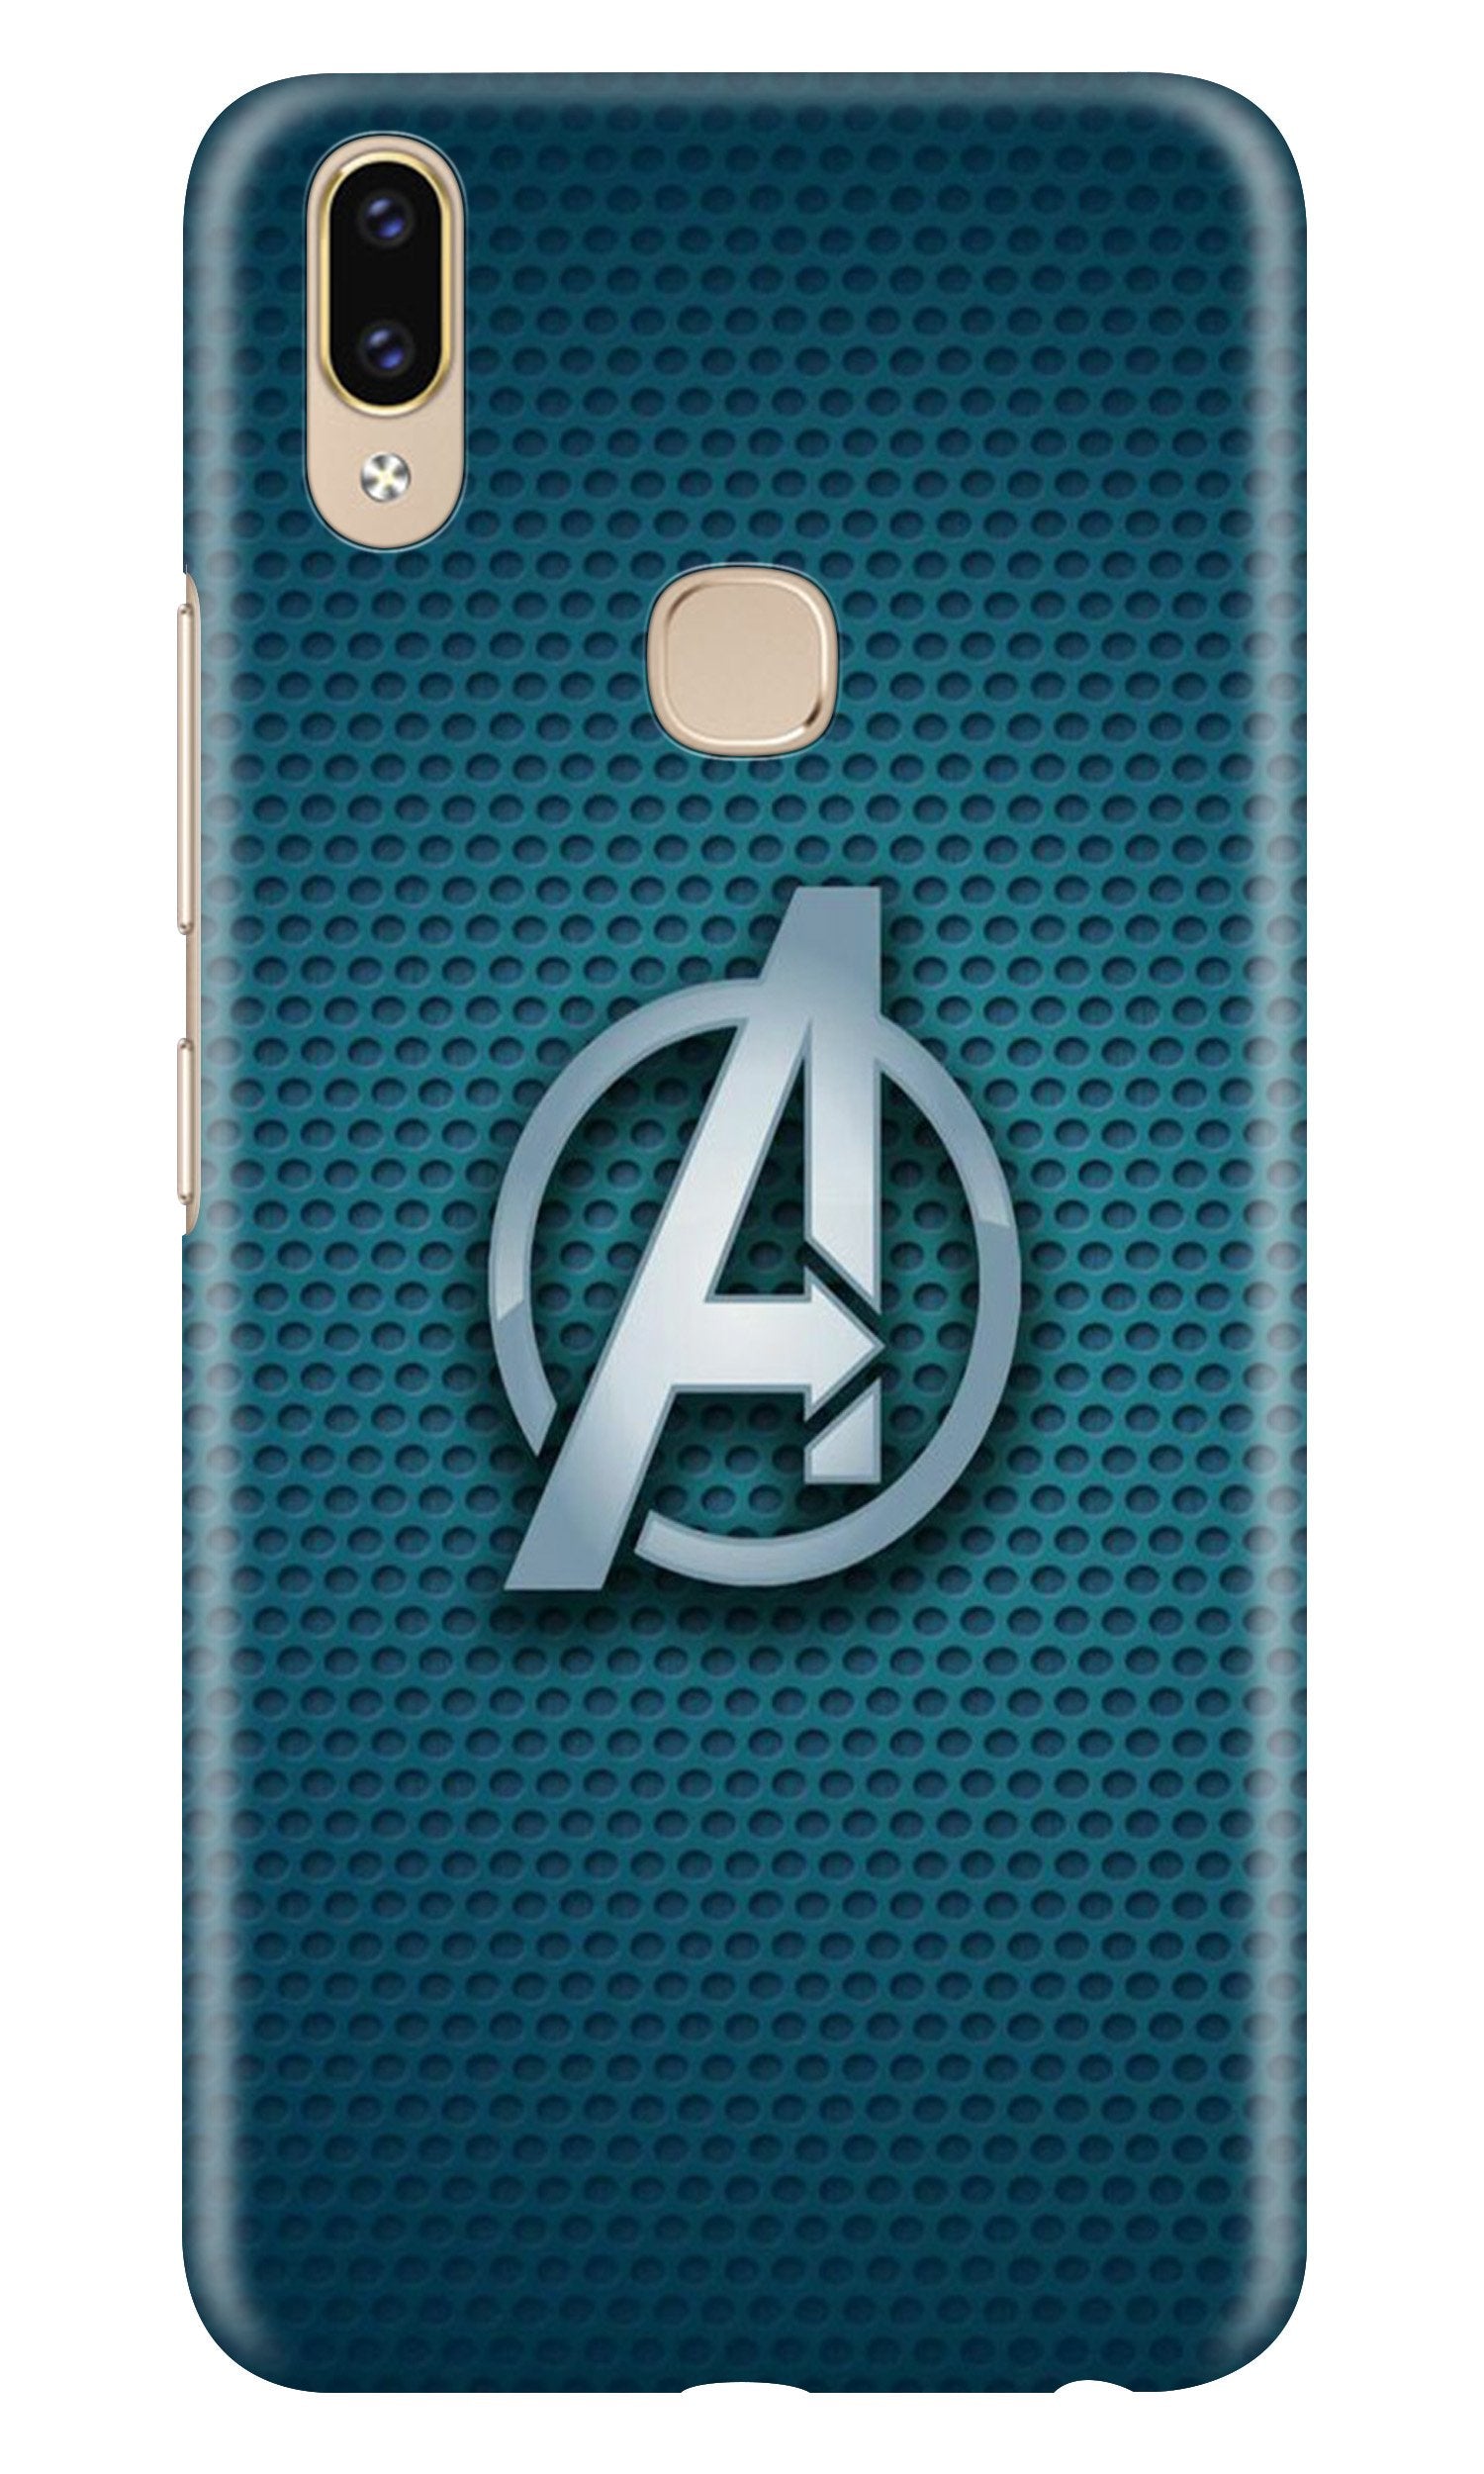 Avengers Case for Vivo Y95/Y93 (Design No. 246)